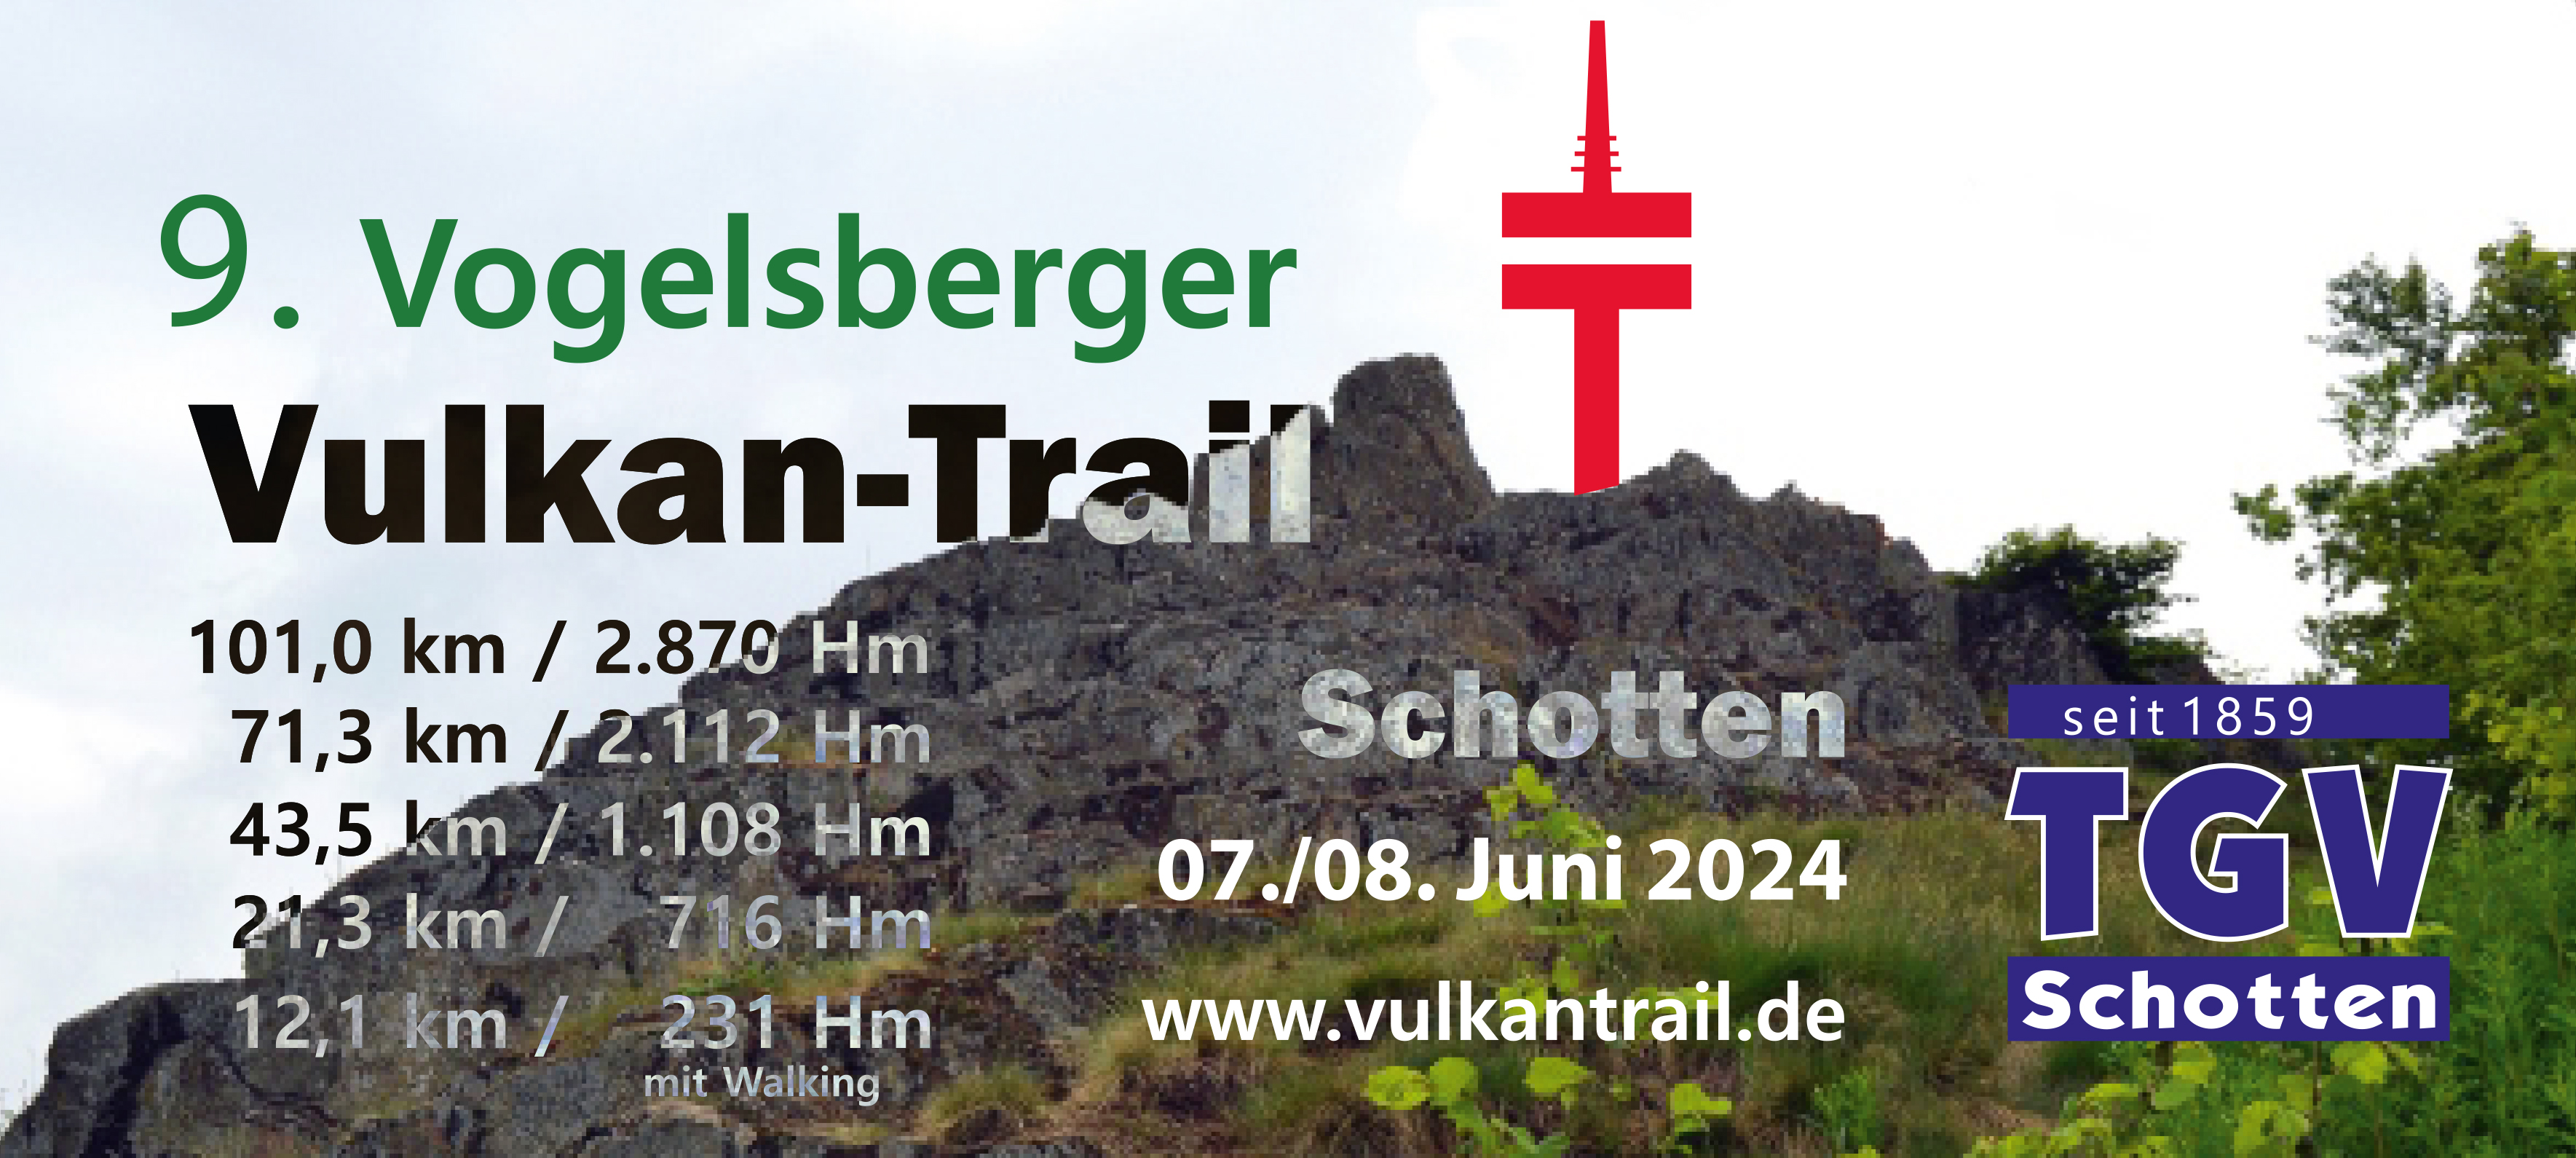 9. Vogelsberger Vulkan-Trail